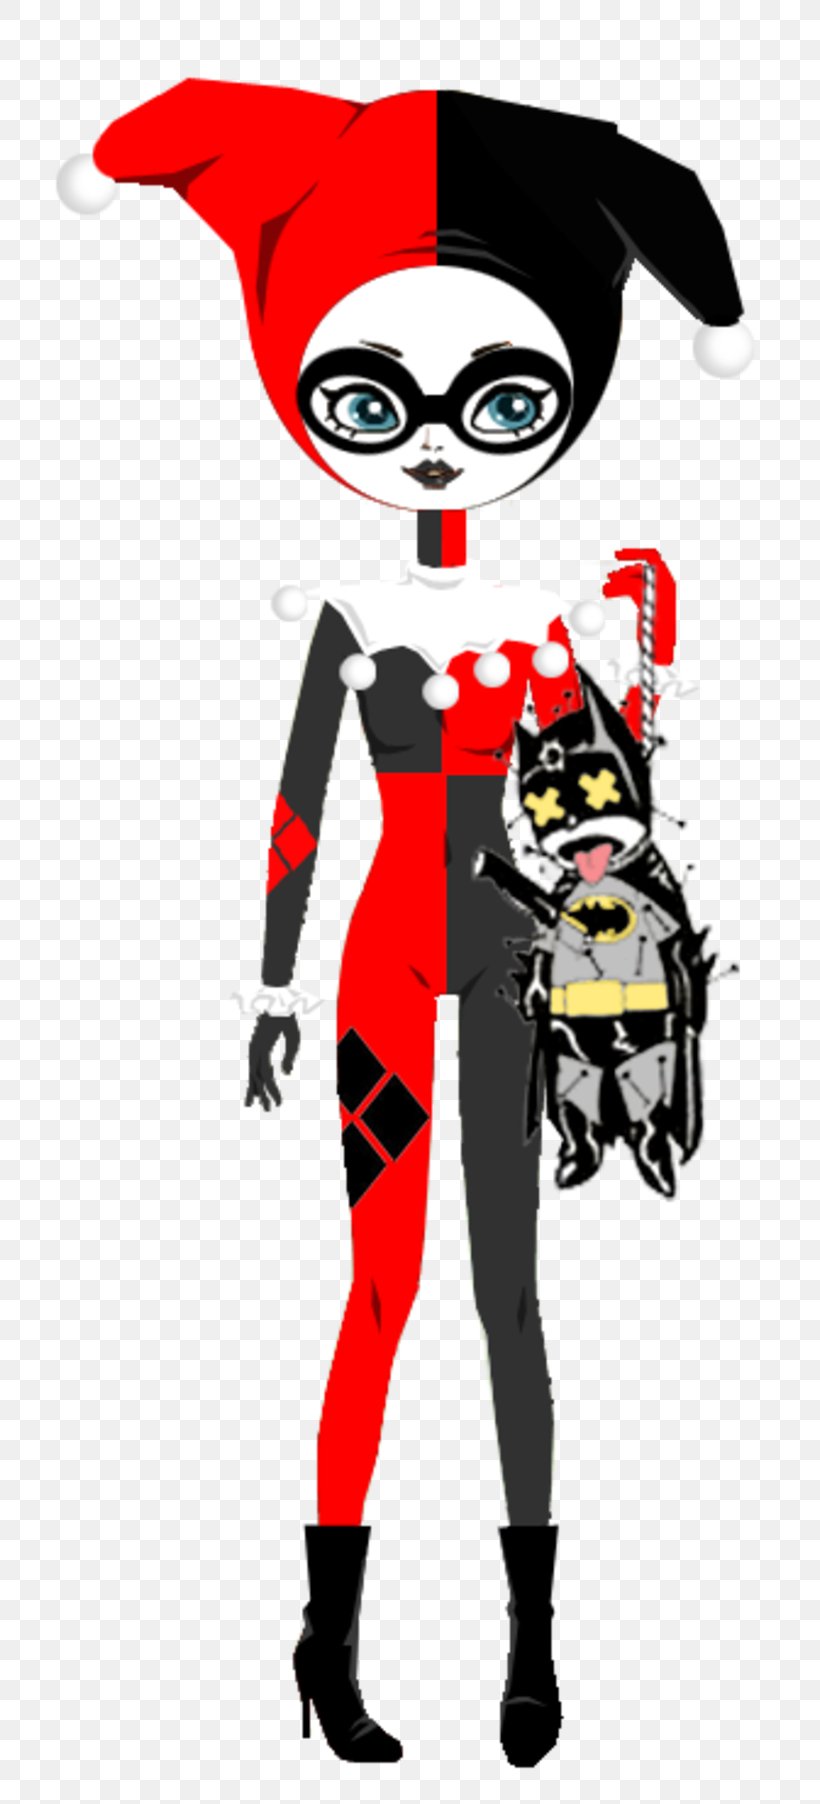 Joker Harley Quinn Mascot Clip Art, PNG, 800x1804px, Joker, Art, Cartoon, Costume, Fictional Character Download Free